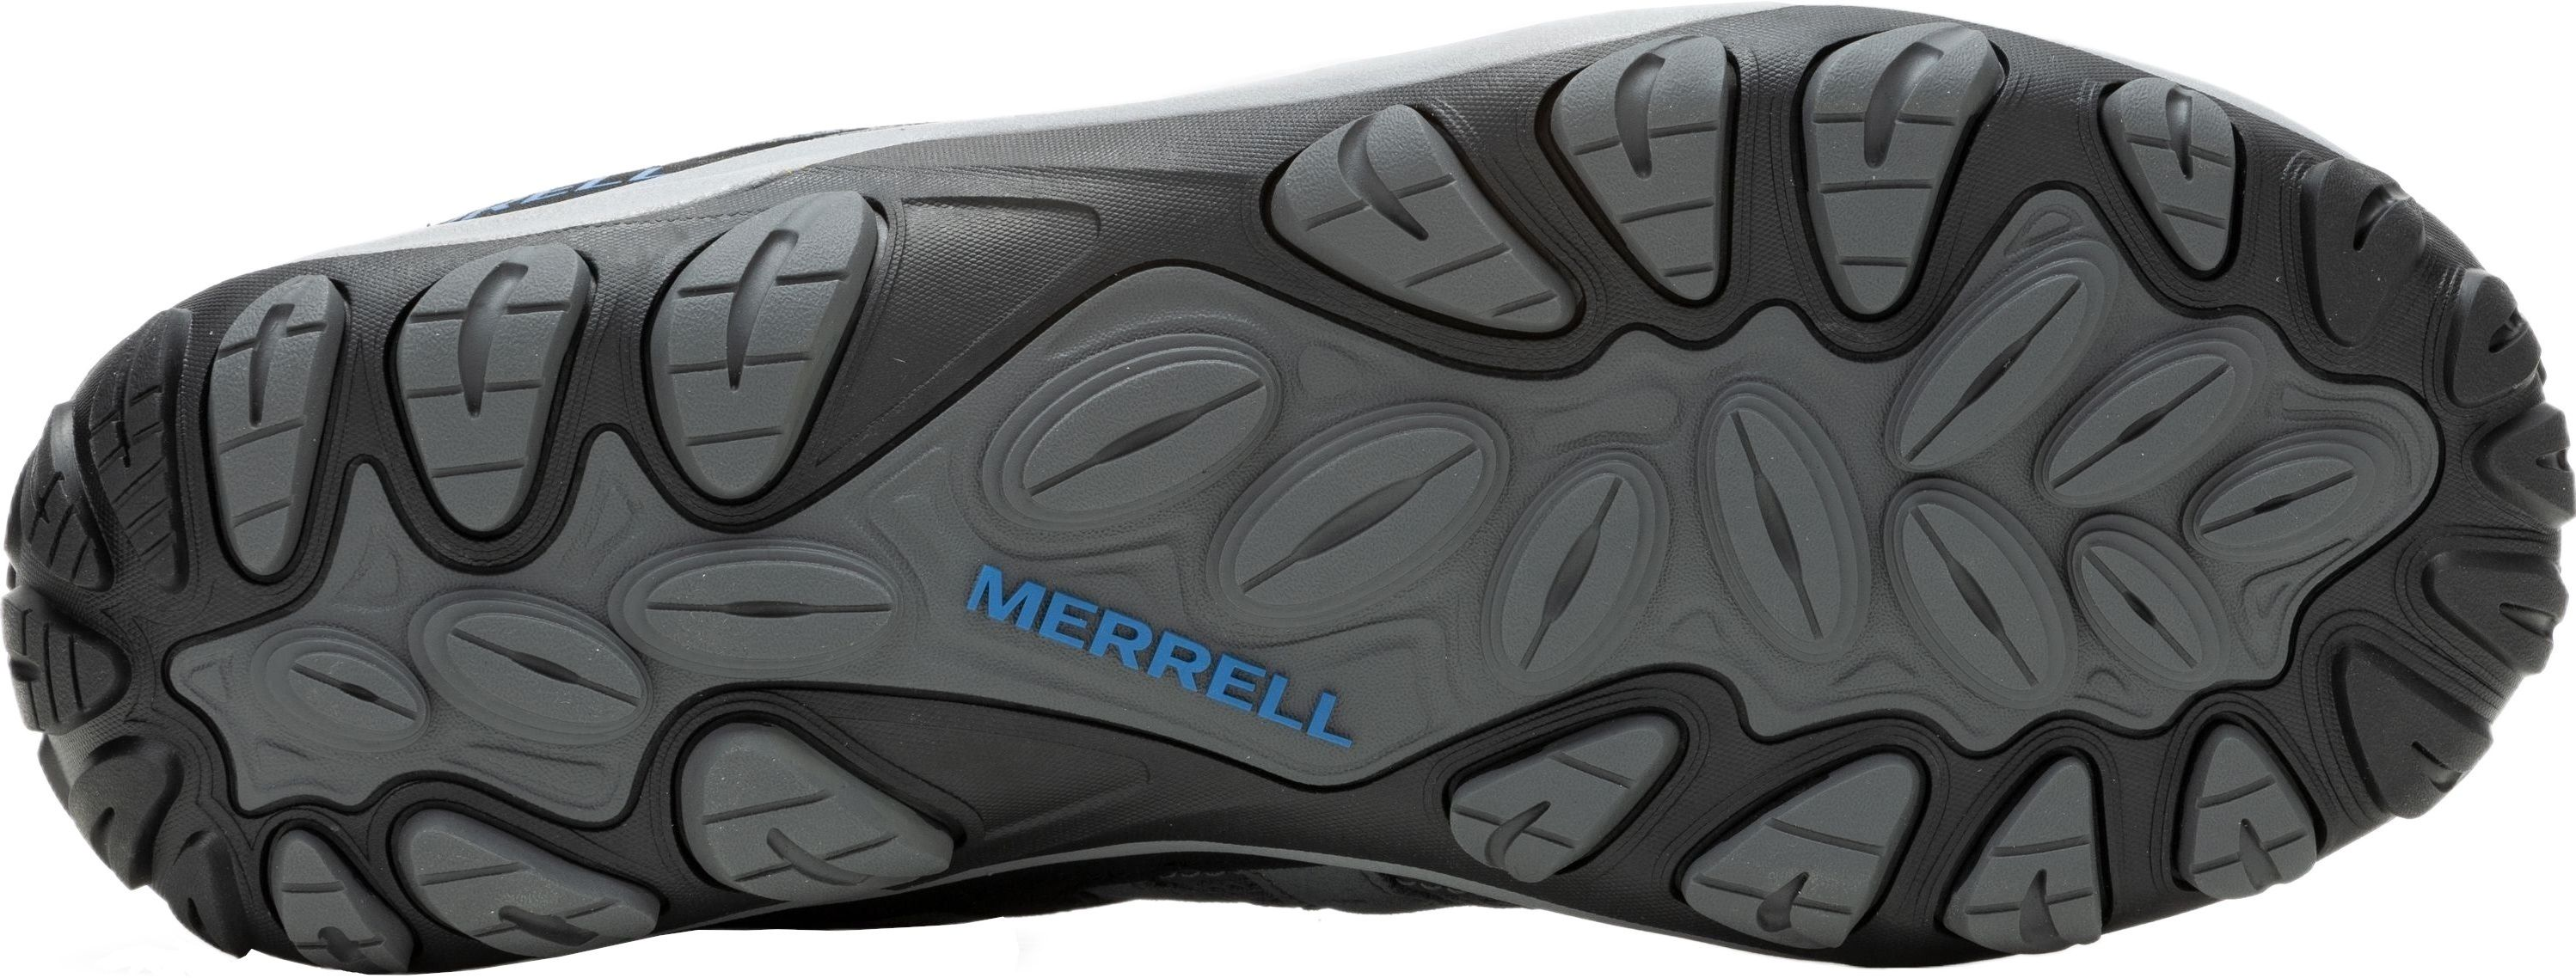 Кроссовки мужские Merrell Accentor 3 Rock/Blue 46 серый/синий фото 6